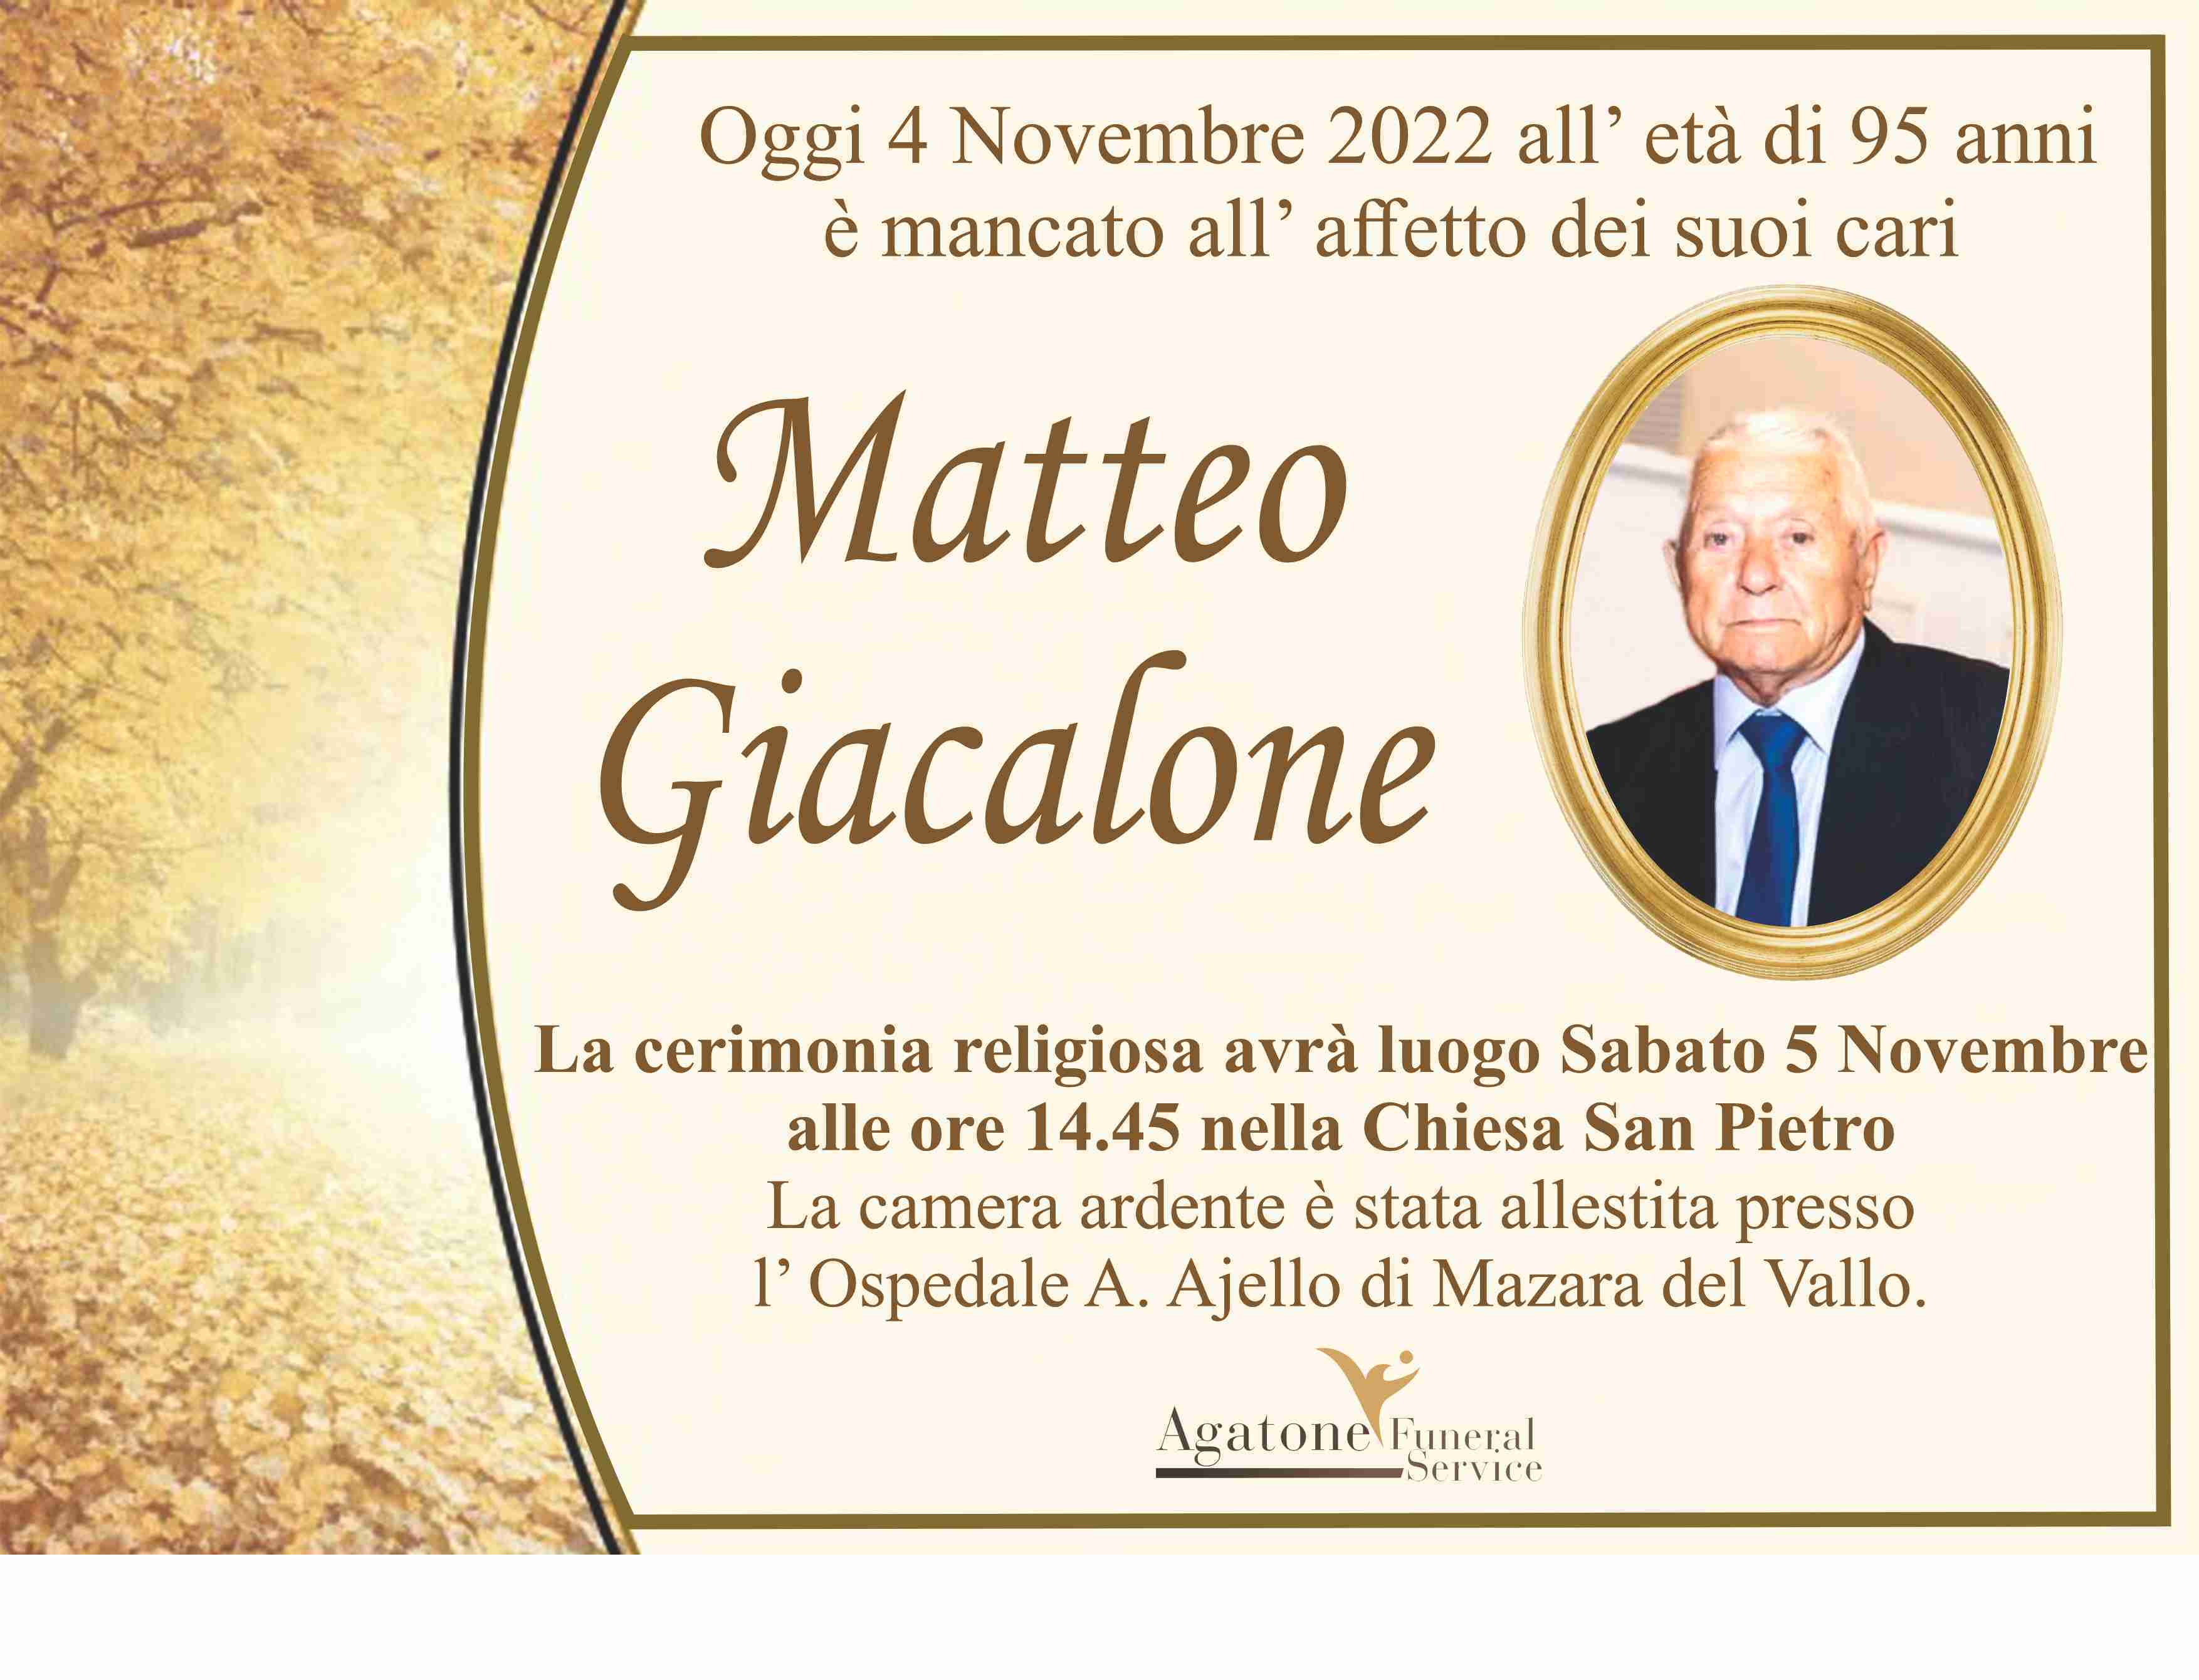 Matteo Giacalone